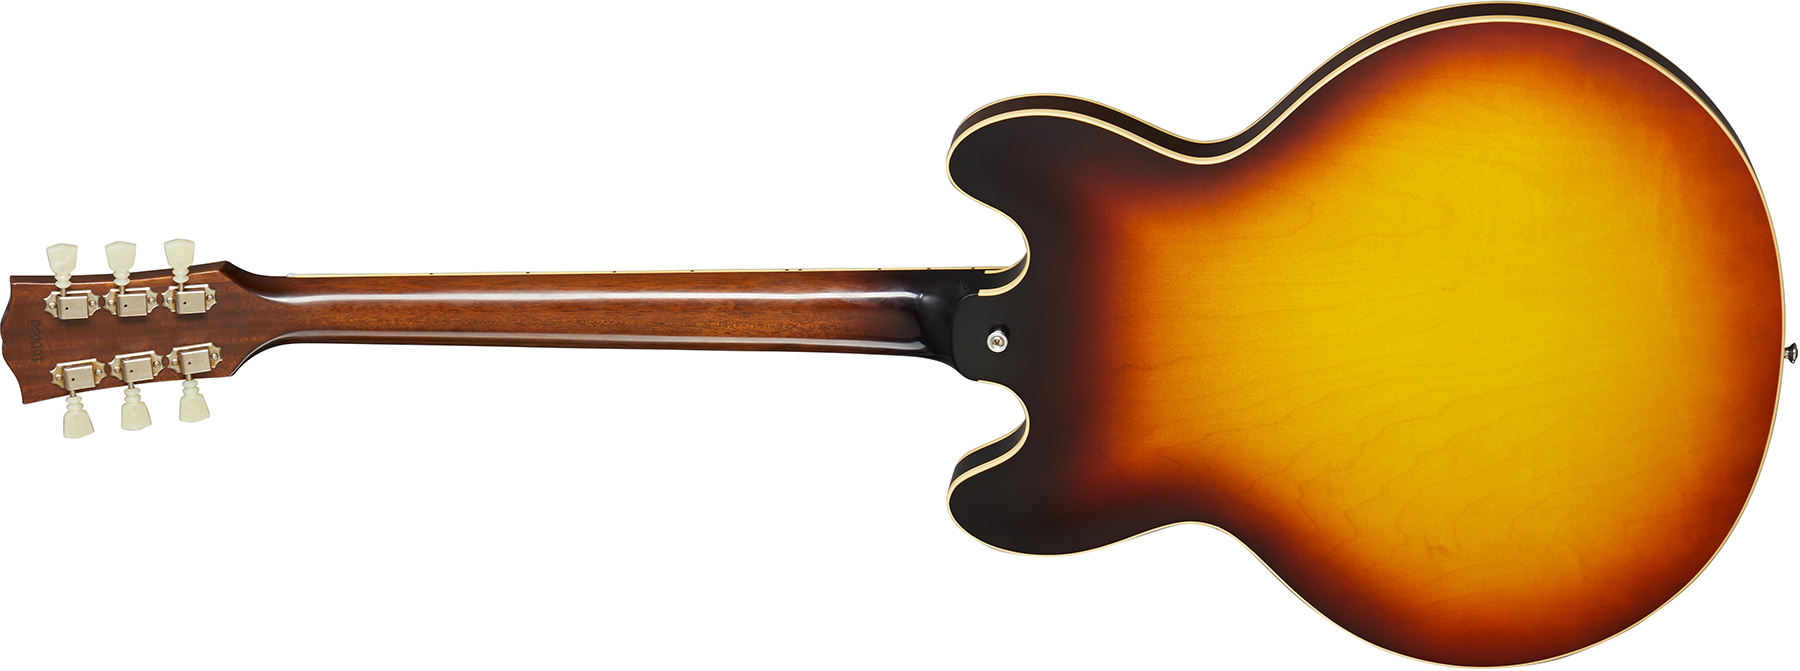 Gibson Custom Shop Historic Es-335 Reissue 1964 2h Ht Rw - Vos Vintage Burst - Semi hollow elektriche gitaar - Variation 1